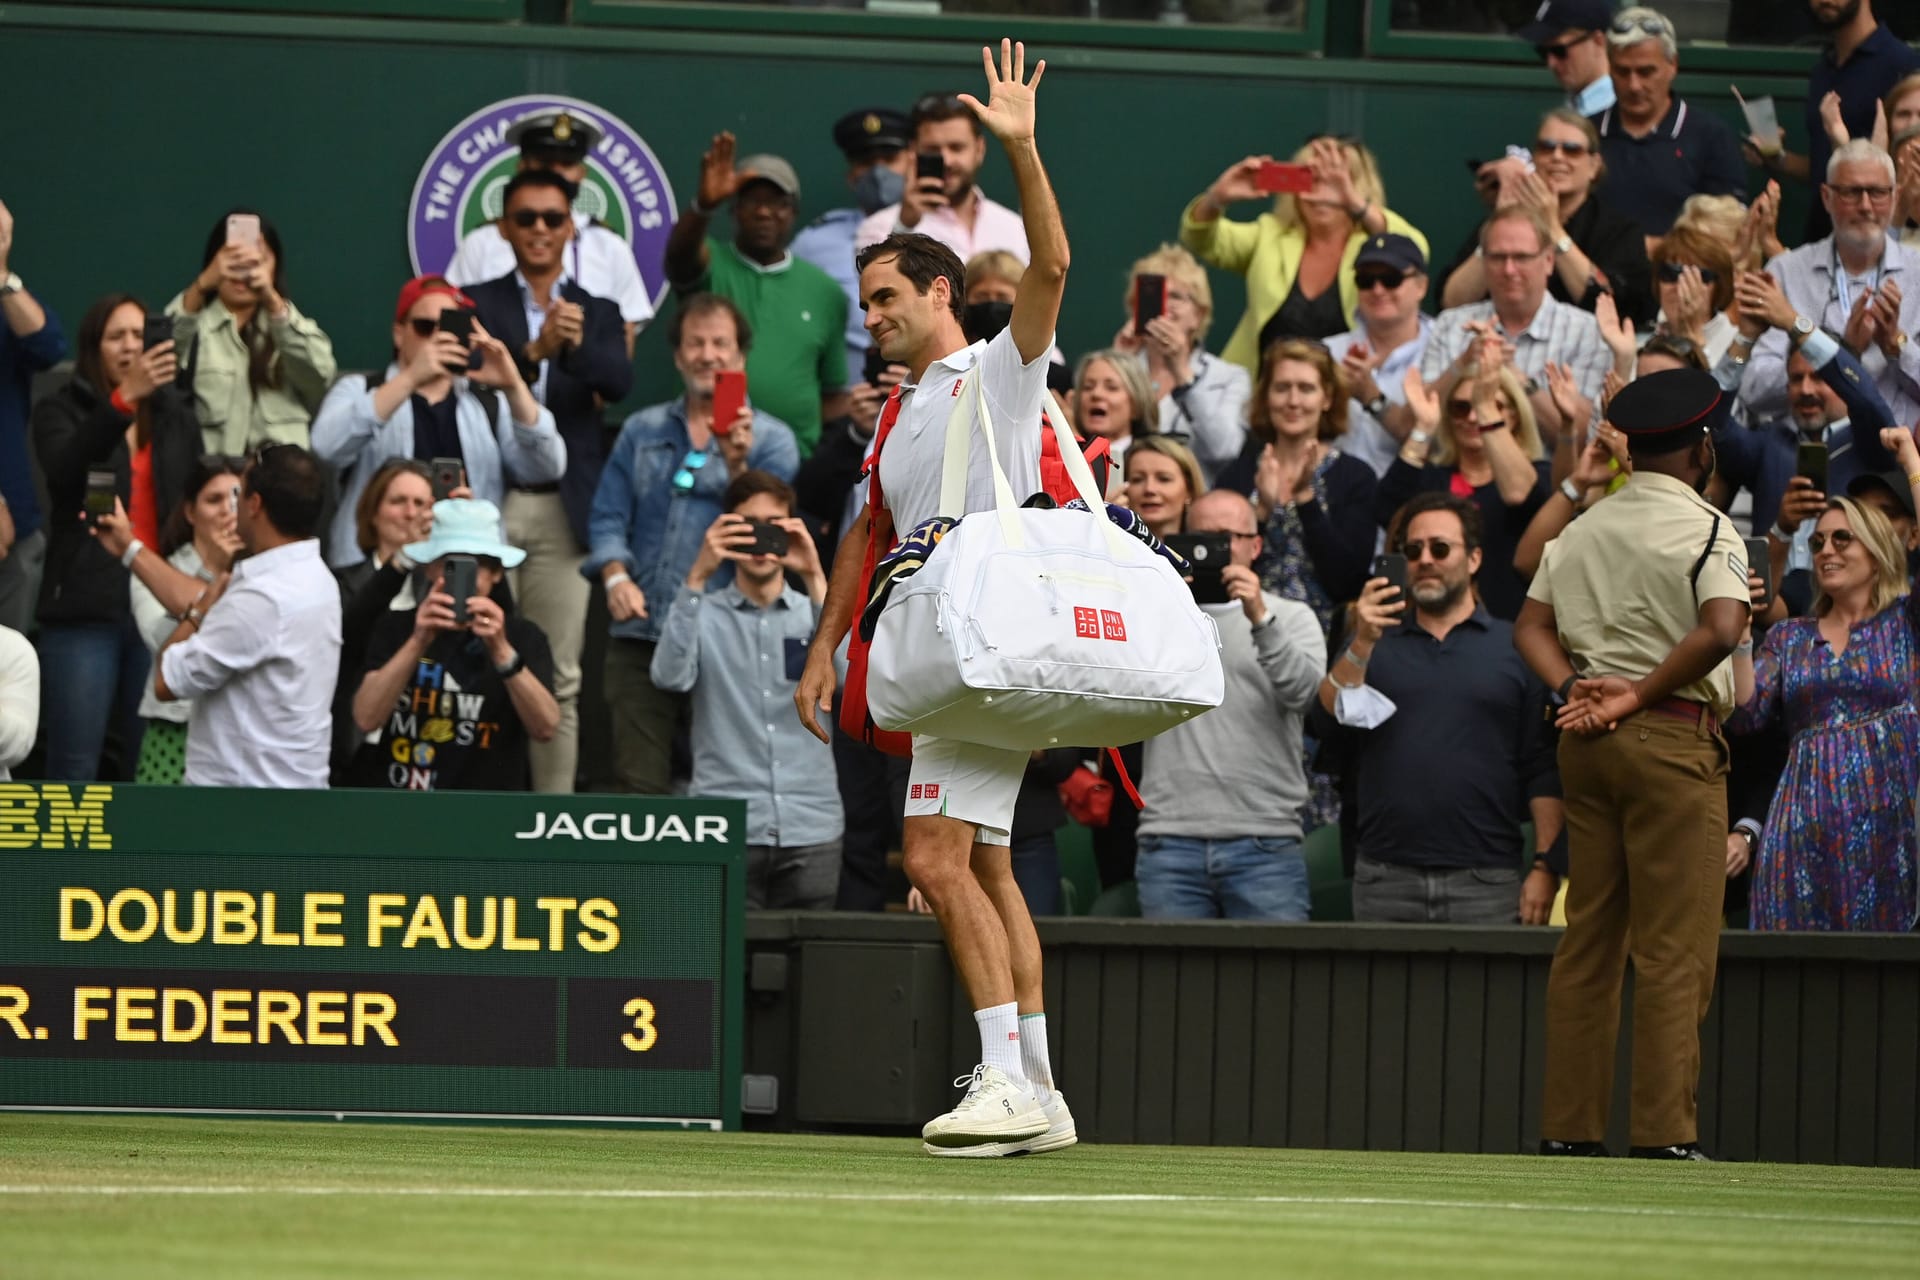 Wimbledon 2021: Mit 39 Jahren erreicht Federer nochmal das Viertelfinale. Angeschlagen, verliert er gegen Hubert Hurkacz glatt in drei Sätzen. Kurz danach muss er sich erneut am Knie operieren lassen. Was er und seine Fans zu diesem Zeitpunkt noch nicht wissen: Es wird sein letzter Auftritt bei einem Grand-Slam-Turnier gewesen sein.